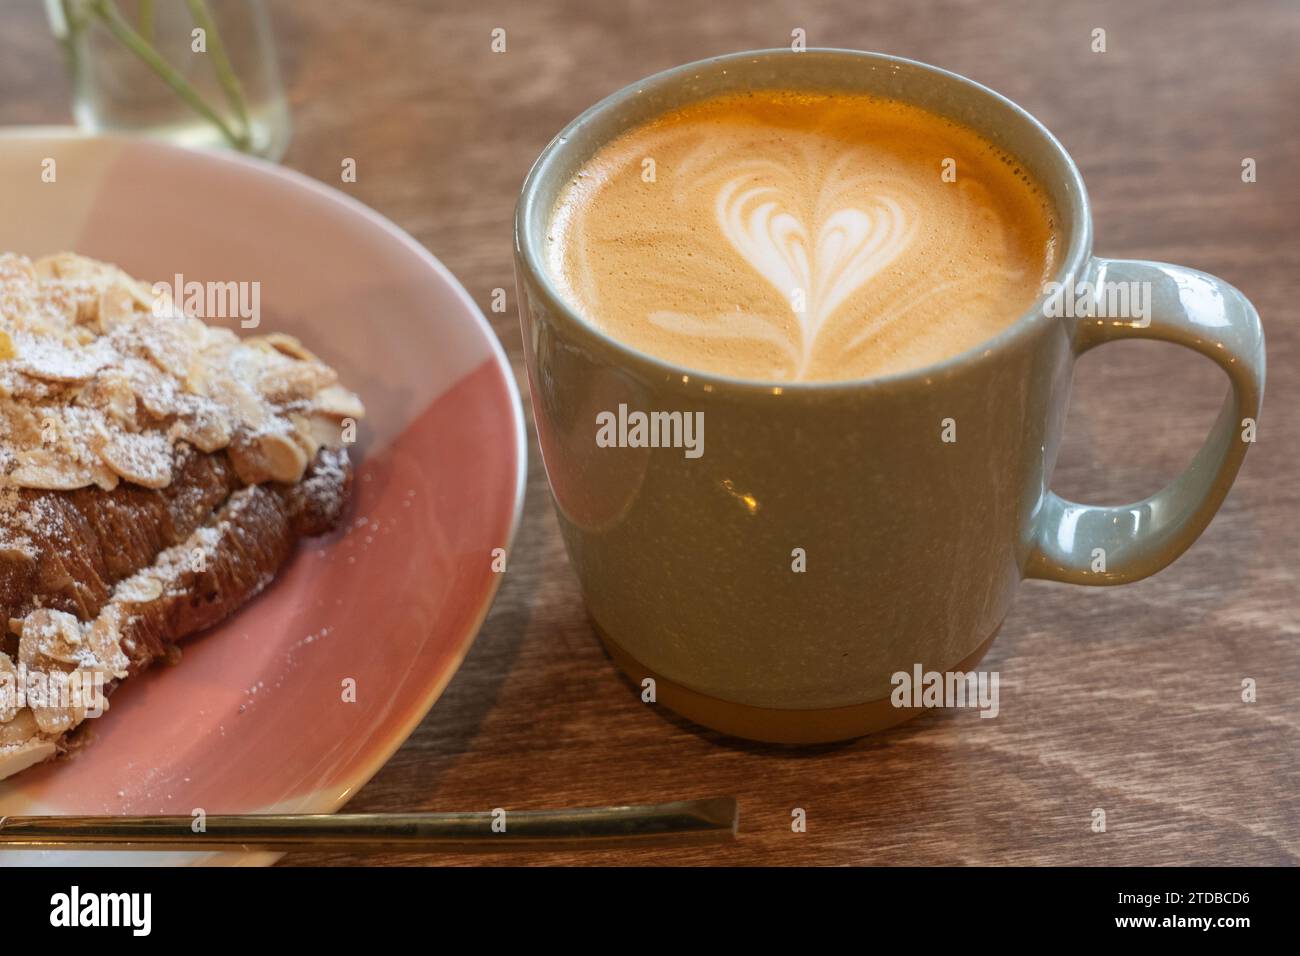 Un latte in una tazza di caffè viene bevuto la mattina in un caffè accanto a un croissant alle mandorle. Simbolo del cuore prodotto nella panna sopra il caffè. REGNO UNITO Foto Stock